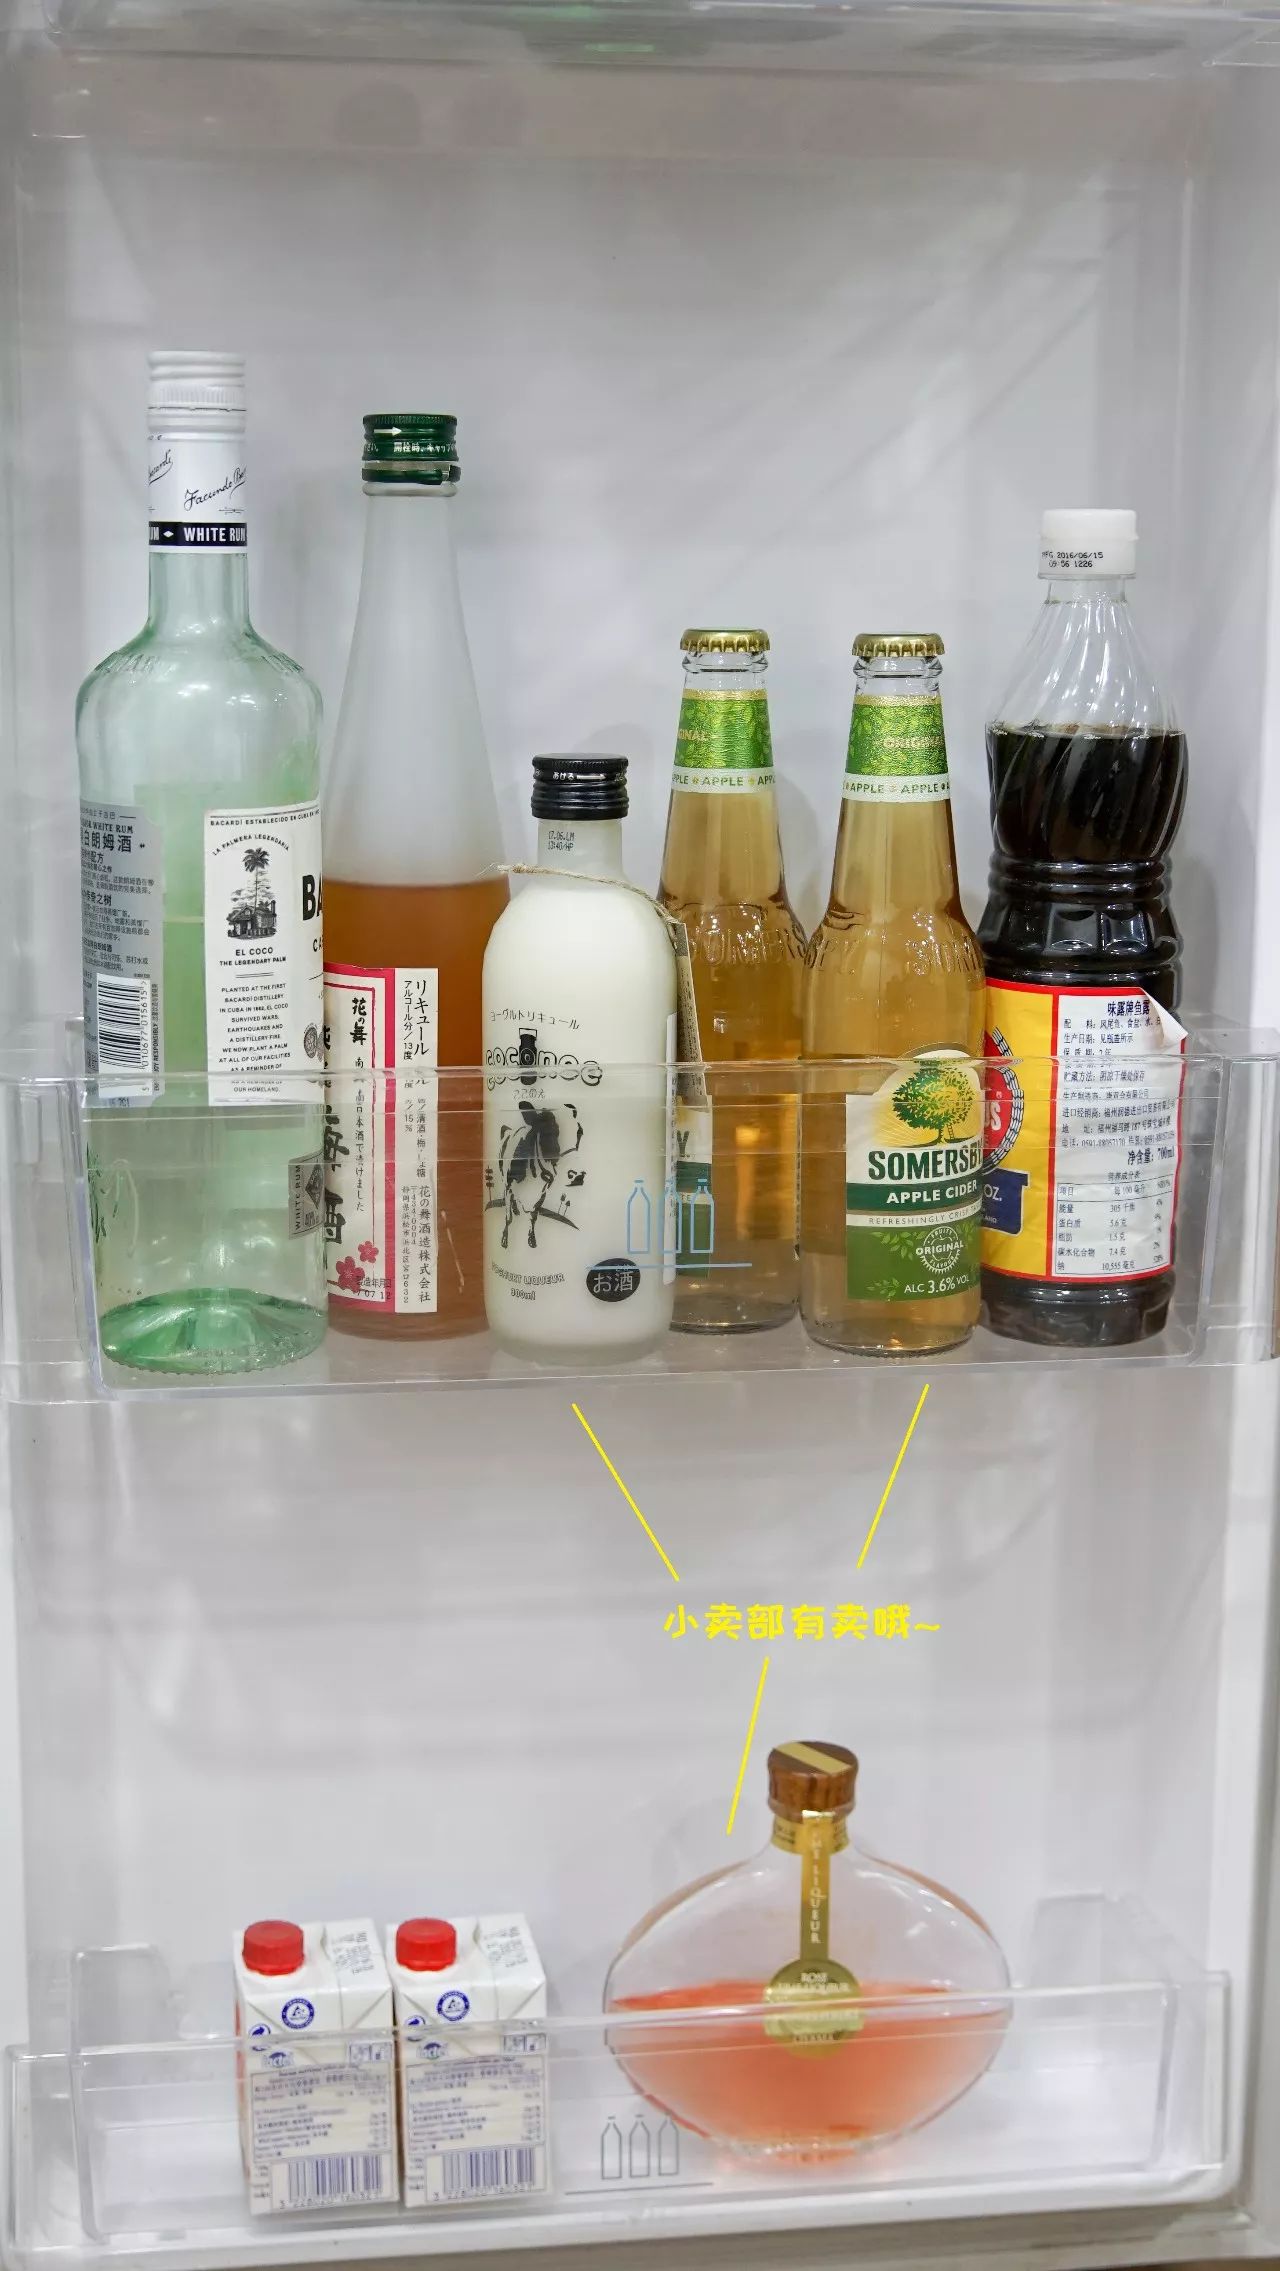 冰箱包装设计_冰箱拆包装示意图_美的冰箱包装